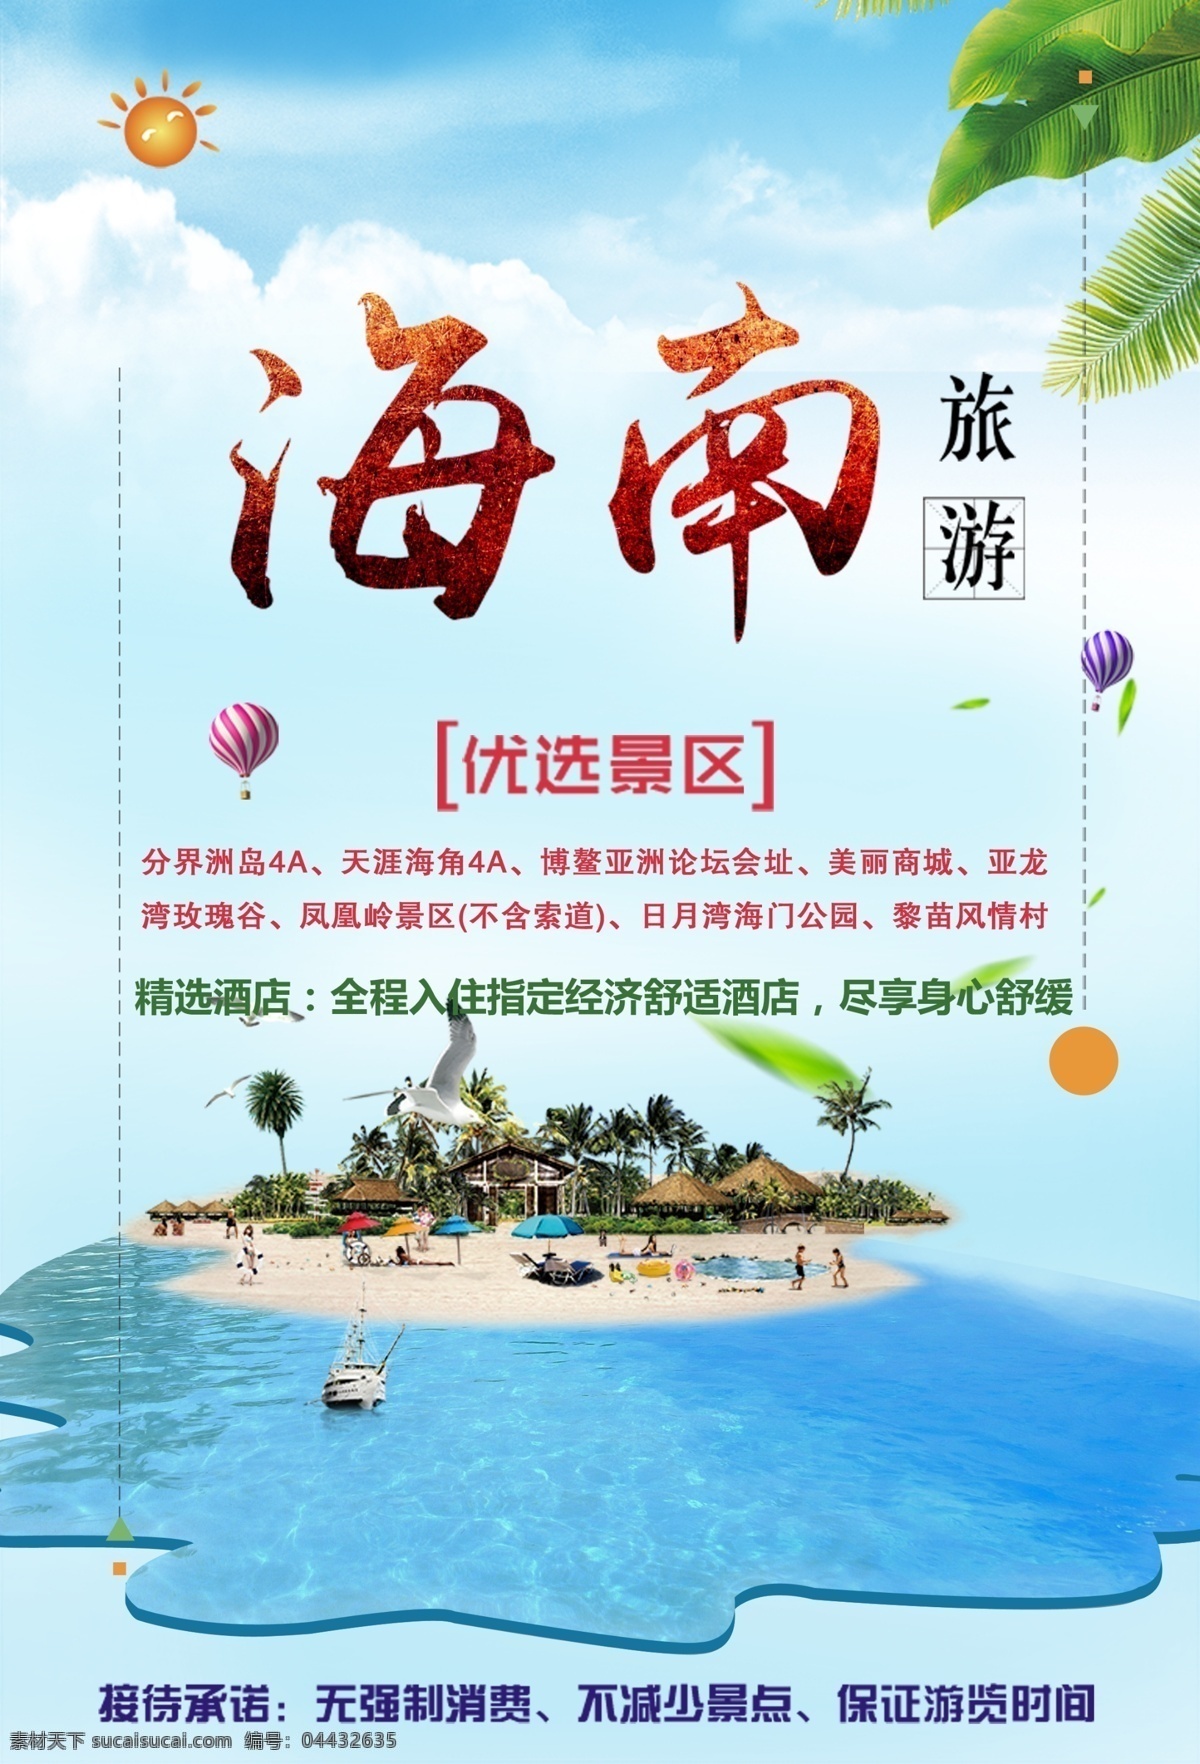 海边旅游广告 看海 中国旅游节 沙滩 旅游海报 海南 海边 海岛 毕业旅行 国外旅游 年假旅游